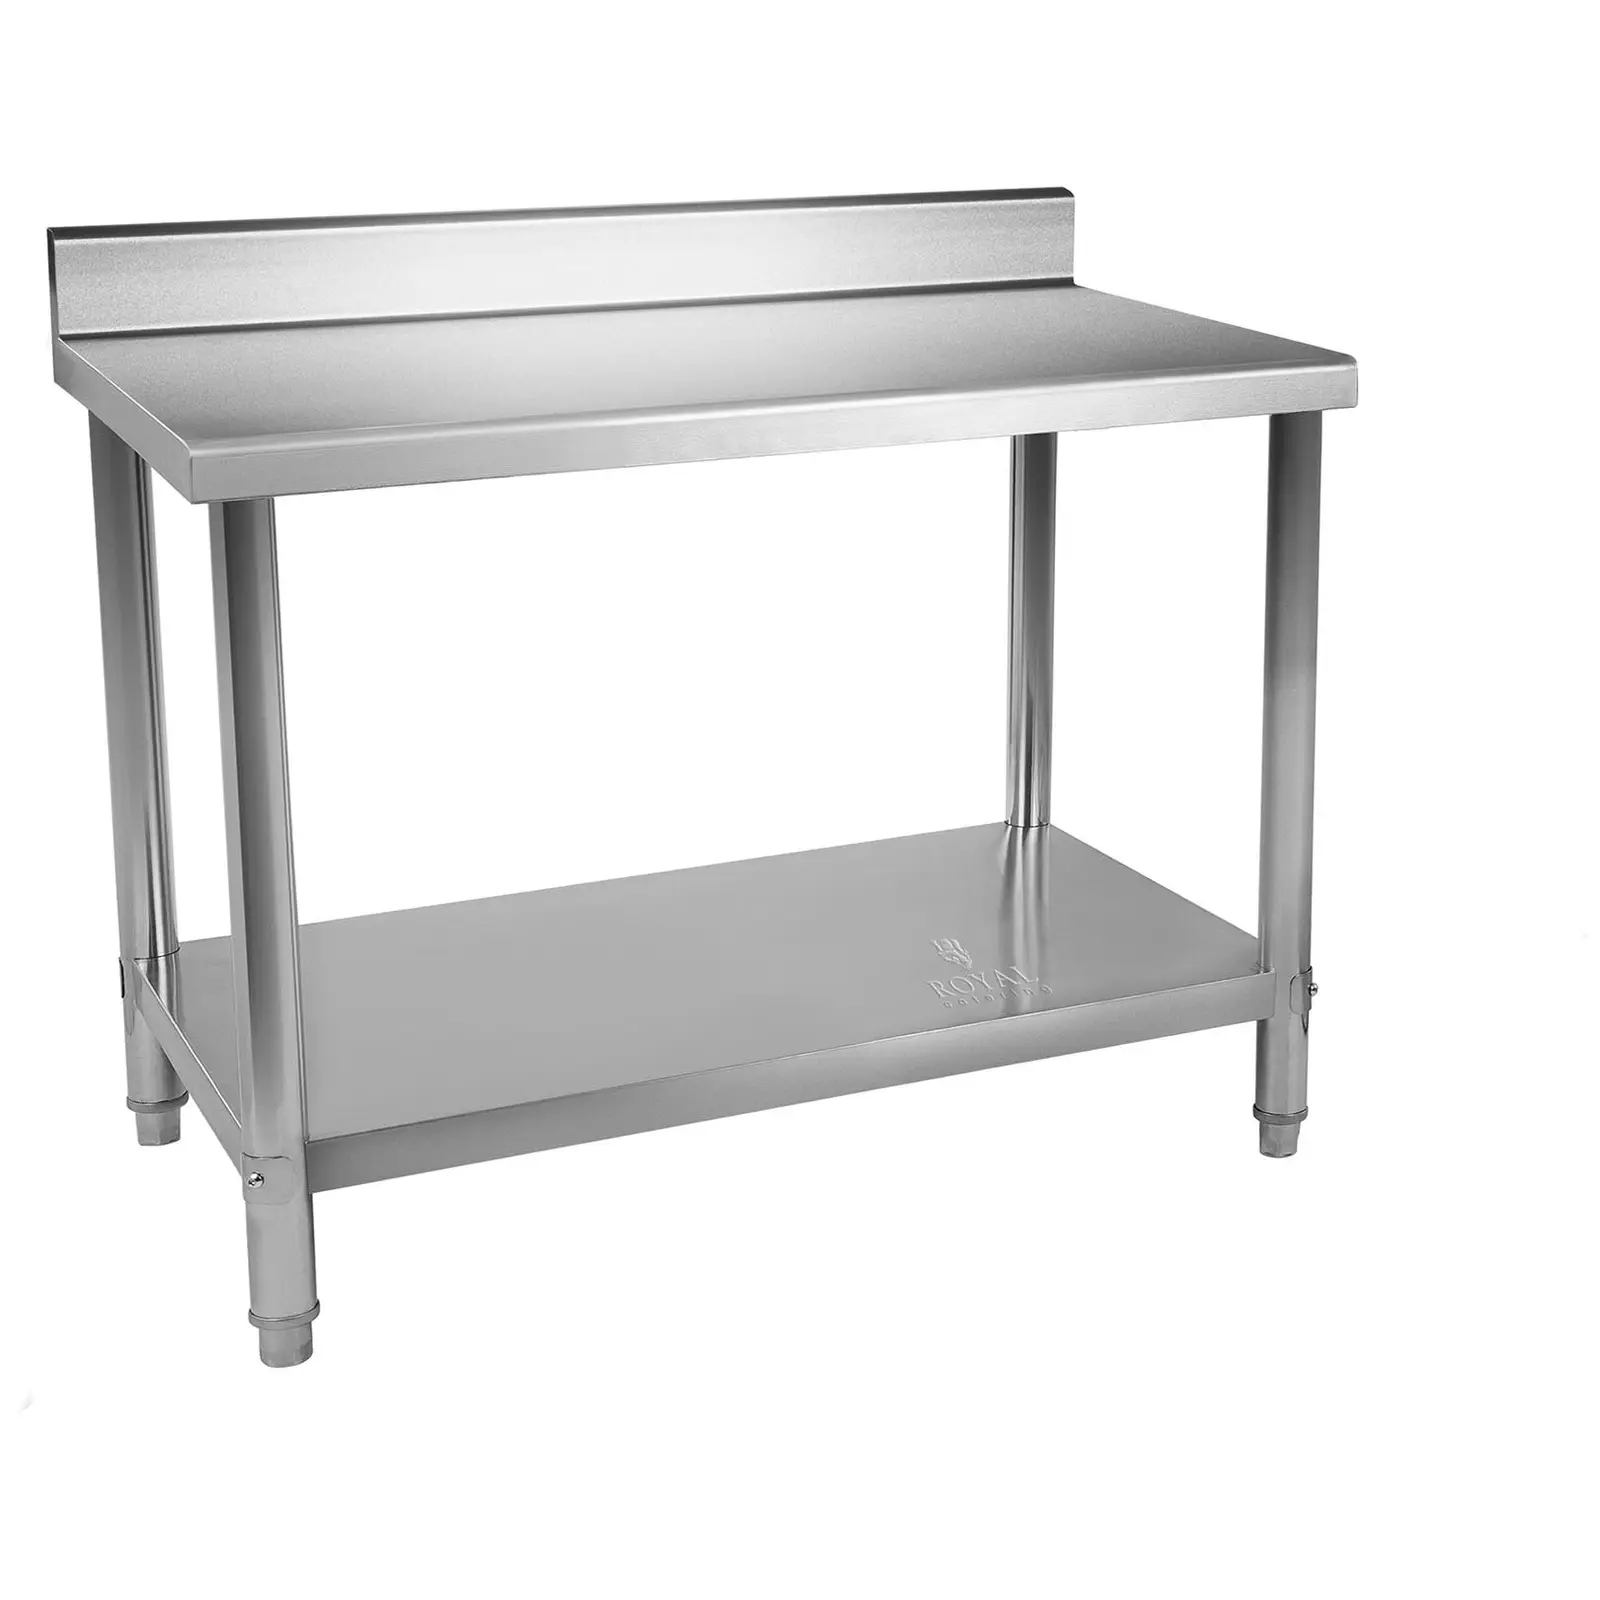 Pracovný stôl z ušľachtilej ocele - 150 x 60 cm - s lemom - 130 kg